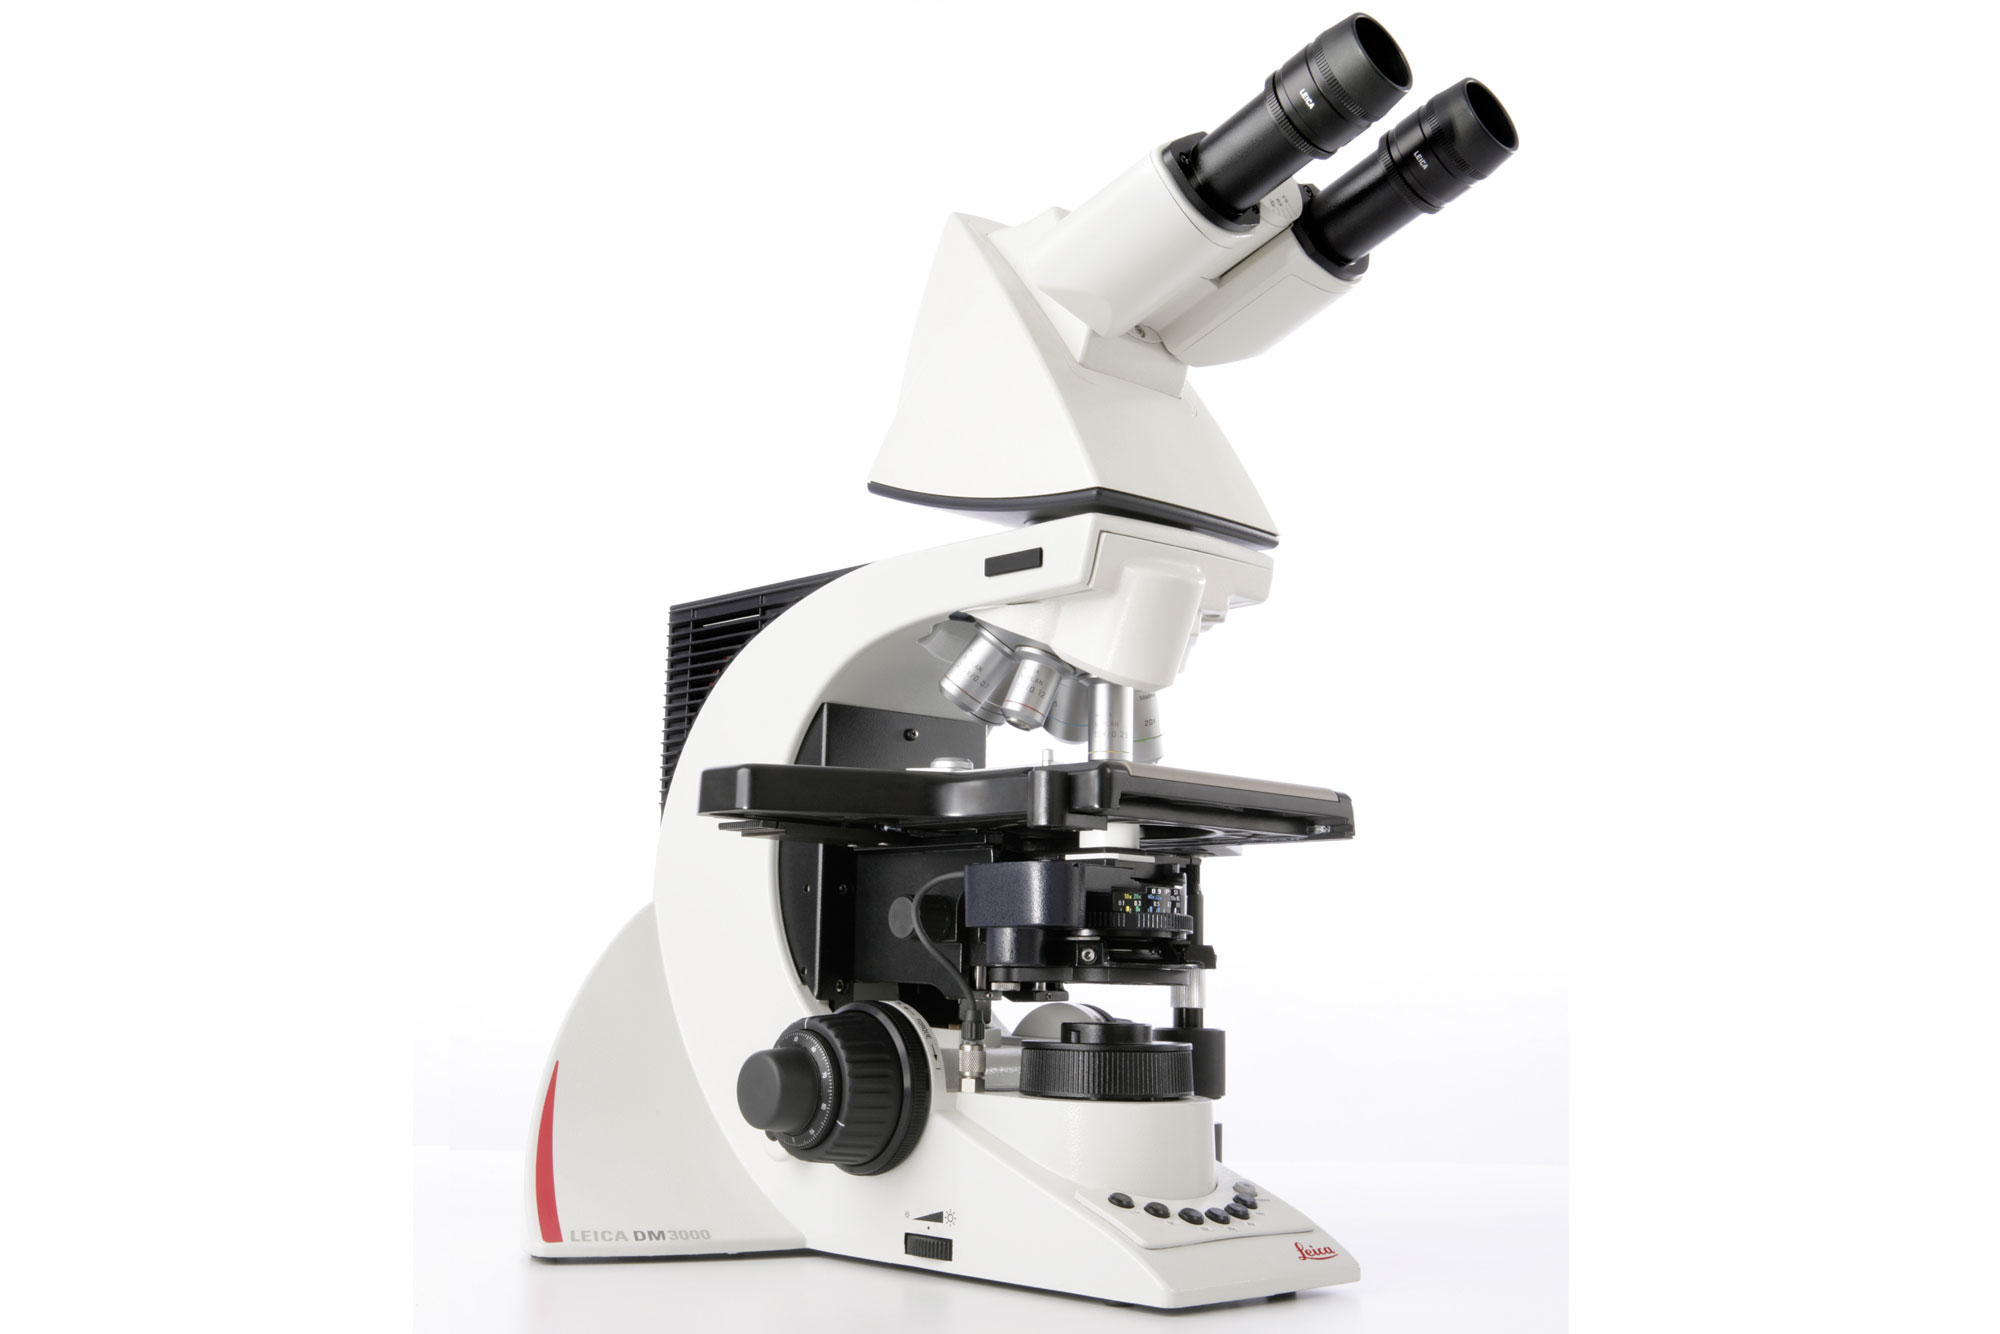 O microscópio de sistema excepcionalmente ergonômico Leica DM3000 melhora os fluxos de trabalho de citologia e patologia graças à sua automação inteligente.